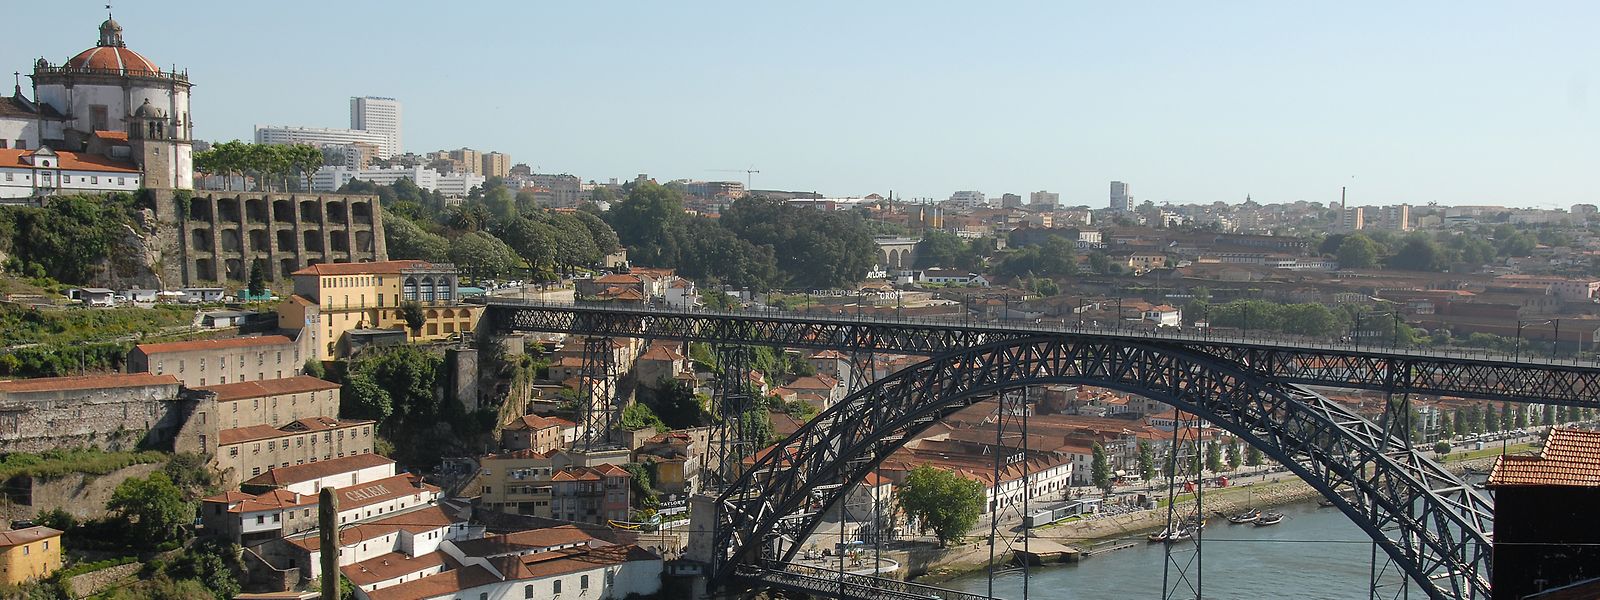 Am Fuß des "Ponte Dom Luís I", entlang des Douro-Ufers, liegen die Portokellereien.